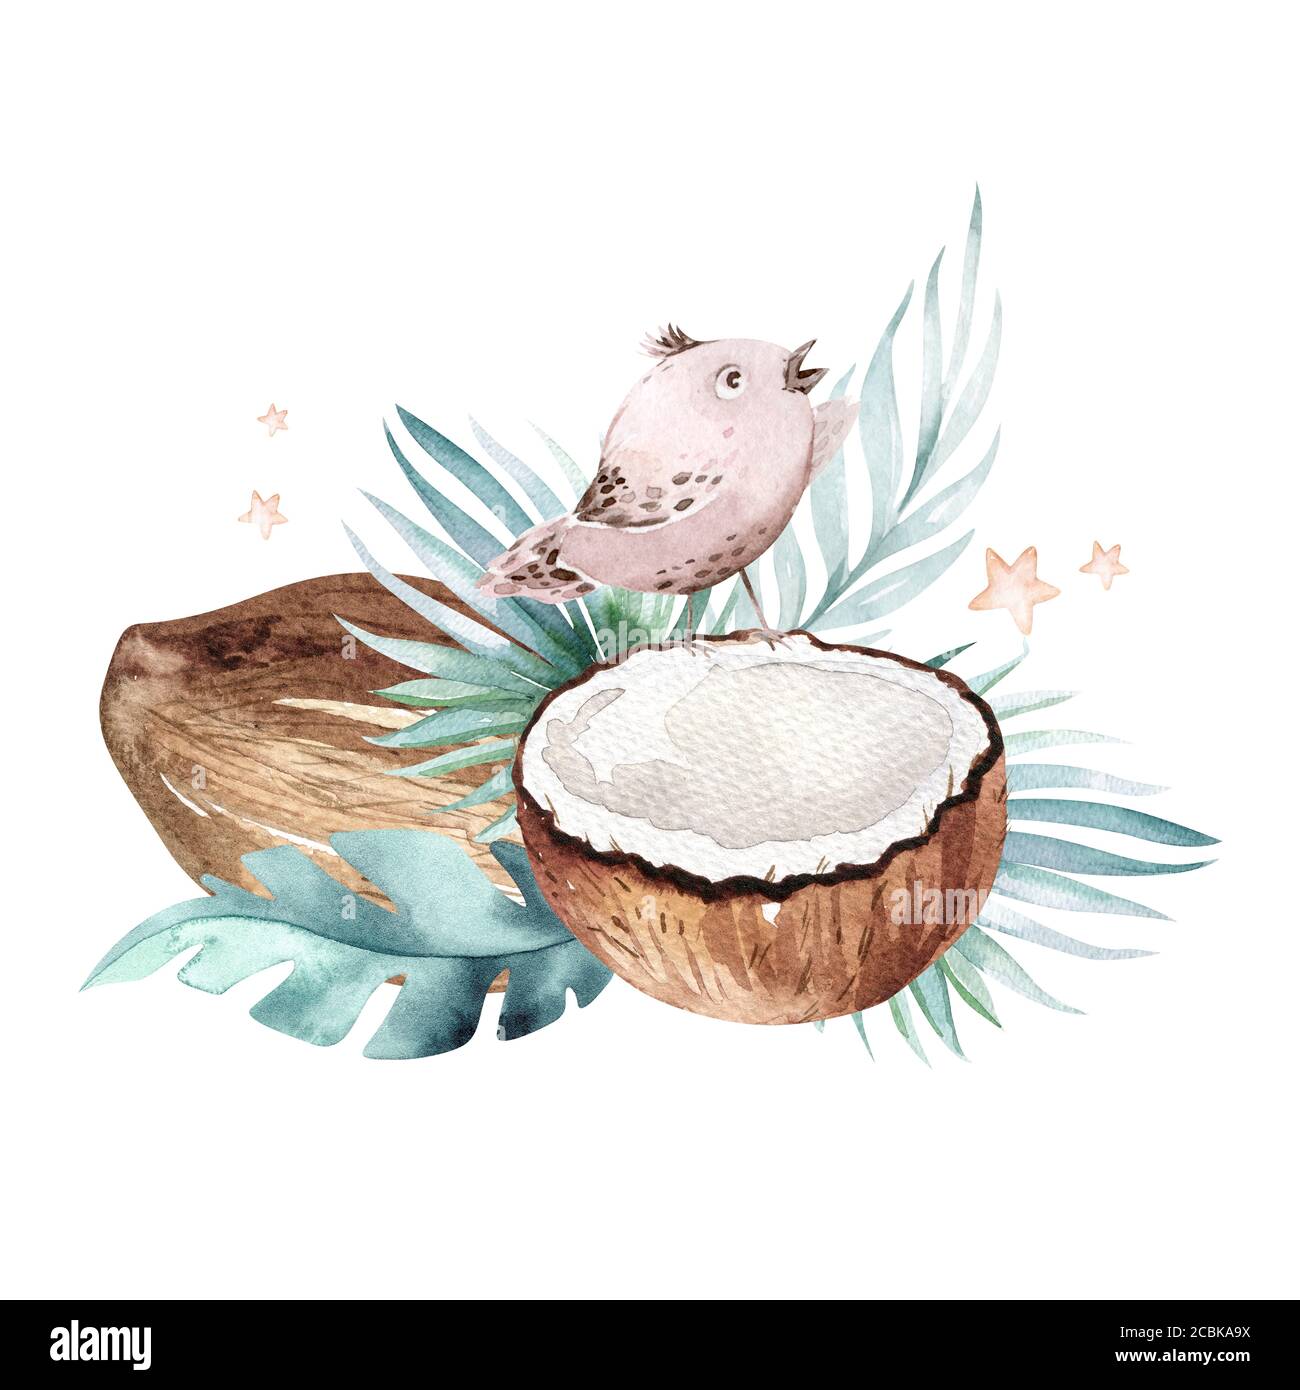 Aquarelle dessinée à la main pour peindre les oiseaux et les feuilles de palmier tropicales avec des noix de coco isolées sur fond blanc. . Illustration des fruits de la nature. Végétalien écologique Banque D'Images